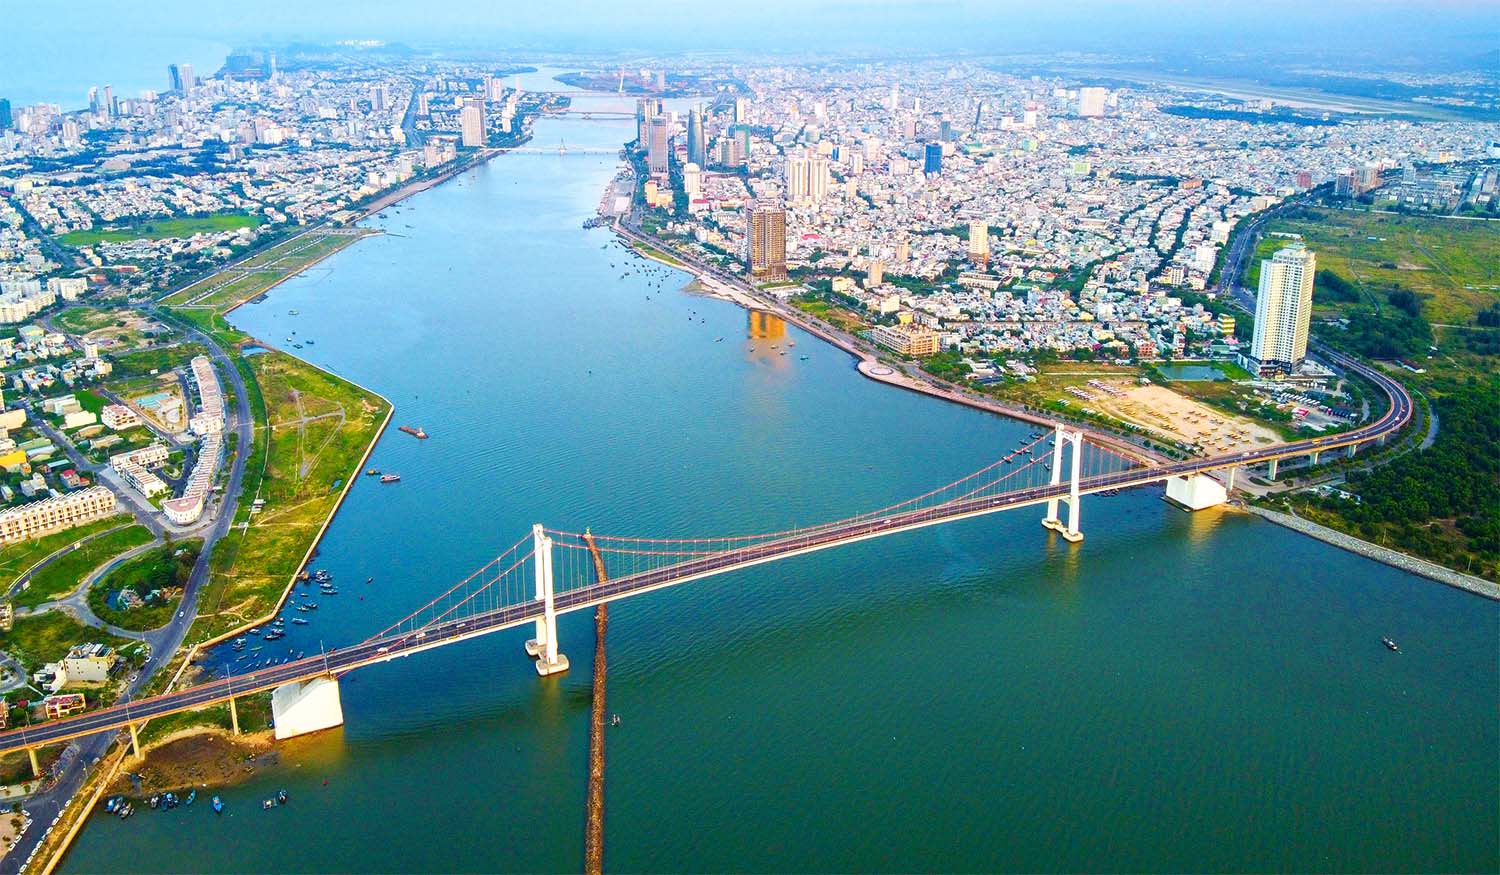 Với chiến lược “hạ tầng đi trước”, nhiều cây cầu nối 2 bờ sông Hàn, mở rộng đô thị về phía Đông để phát triển du lịch, Đà Nẵng đã chuyển mình mạnh mẽ